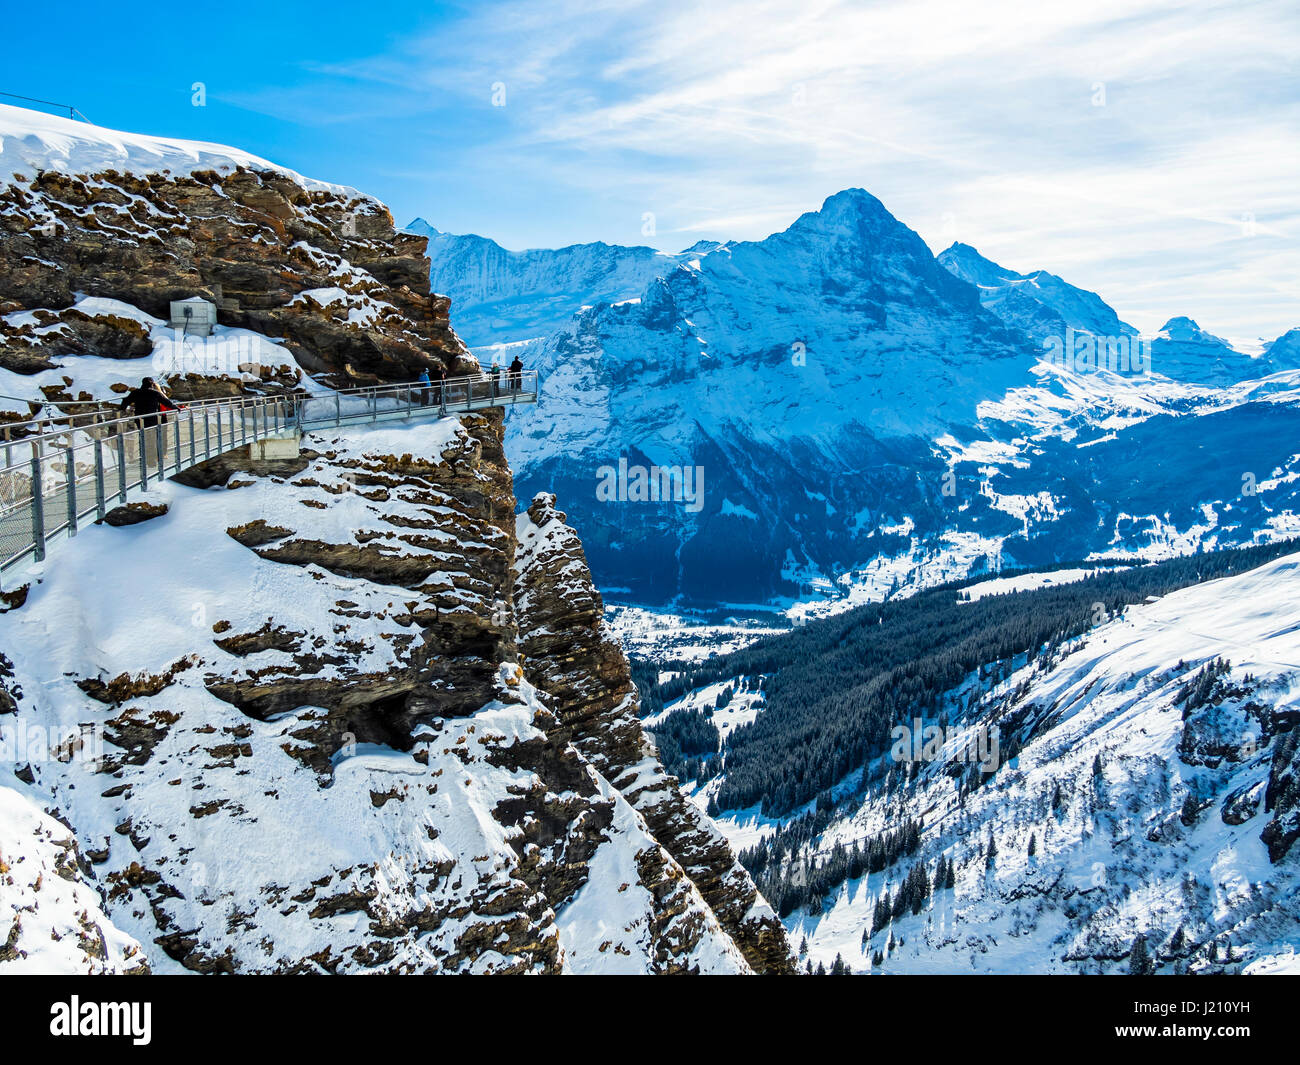 Schweiz, Kanton Bern, Berner Oberland, Interlaken-Oberhasli, primo, Grindelwald, Blick vom prima Cliff Walk auf den Eiger und die Eiger Nordwand Foto Stock